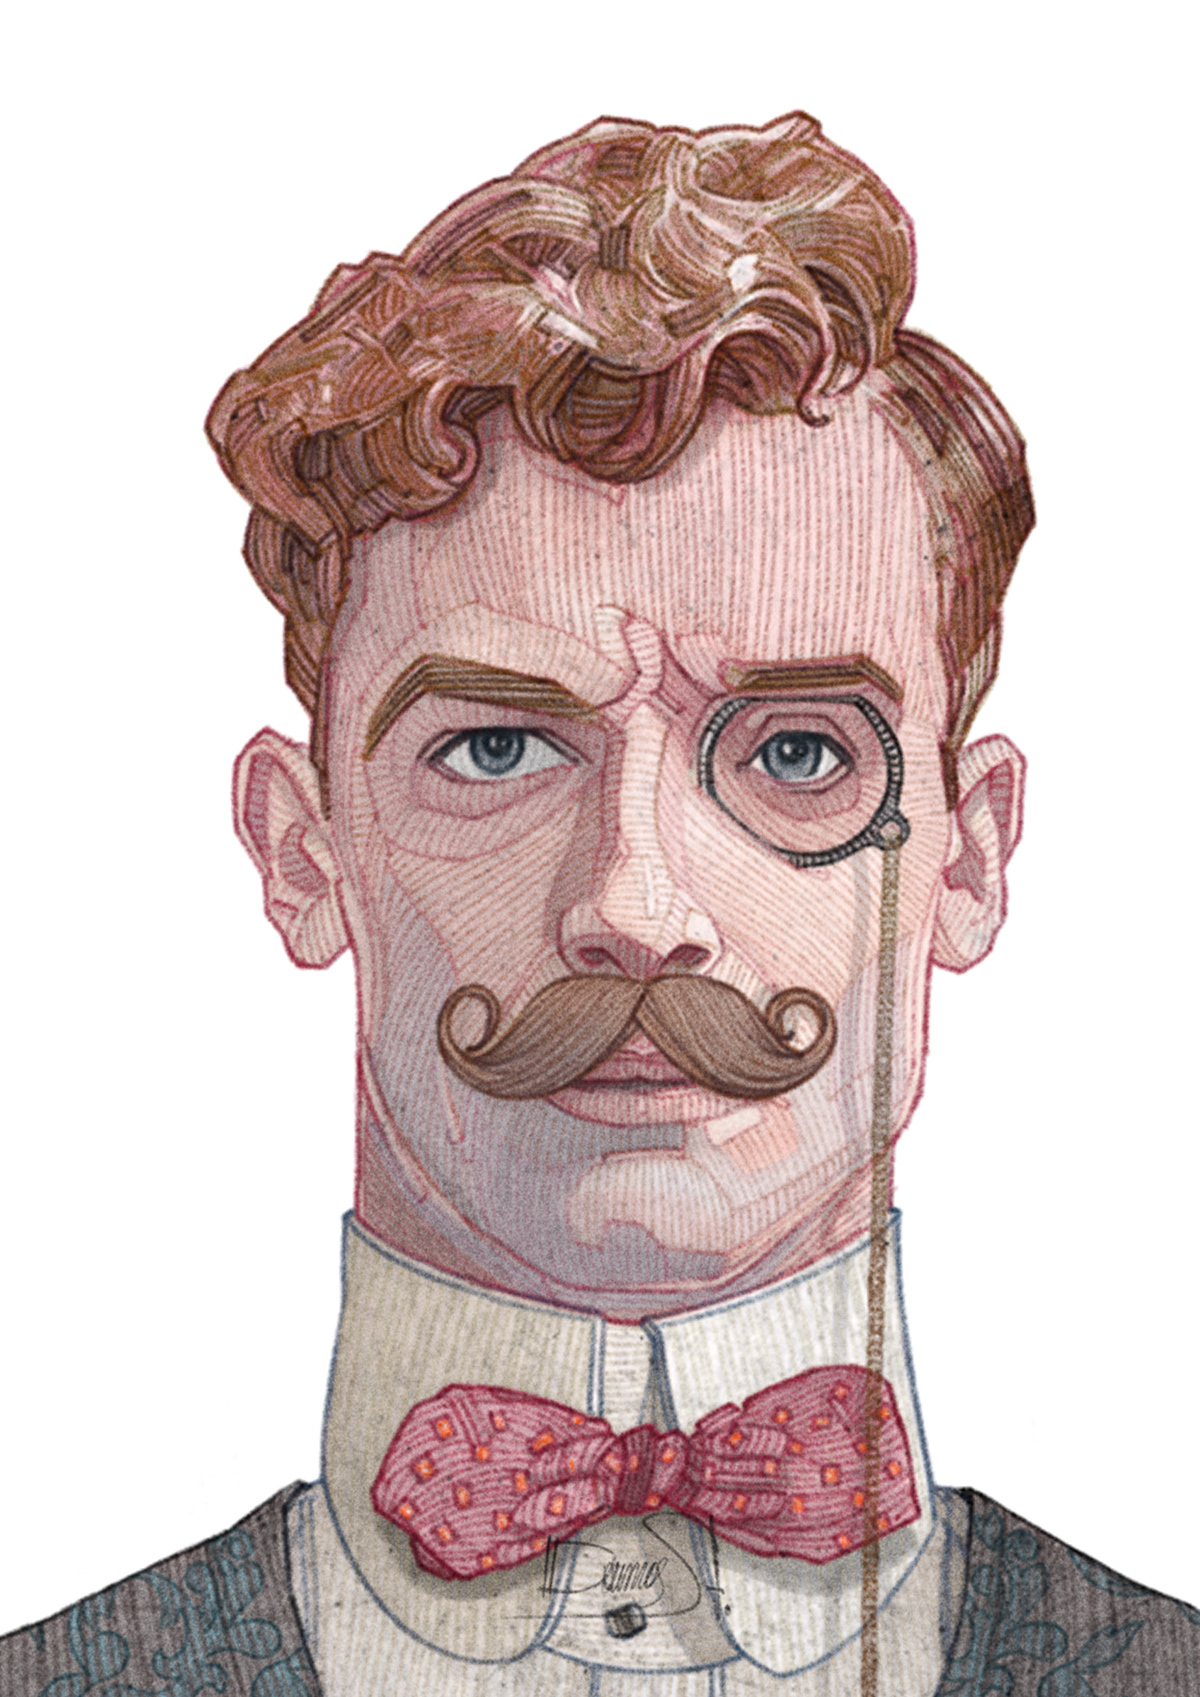 sketch art Retro vintage color old mustache linework texture portrait figure Character